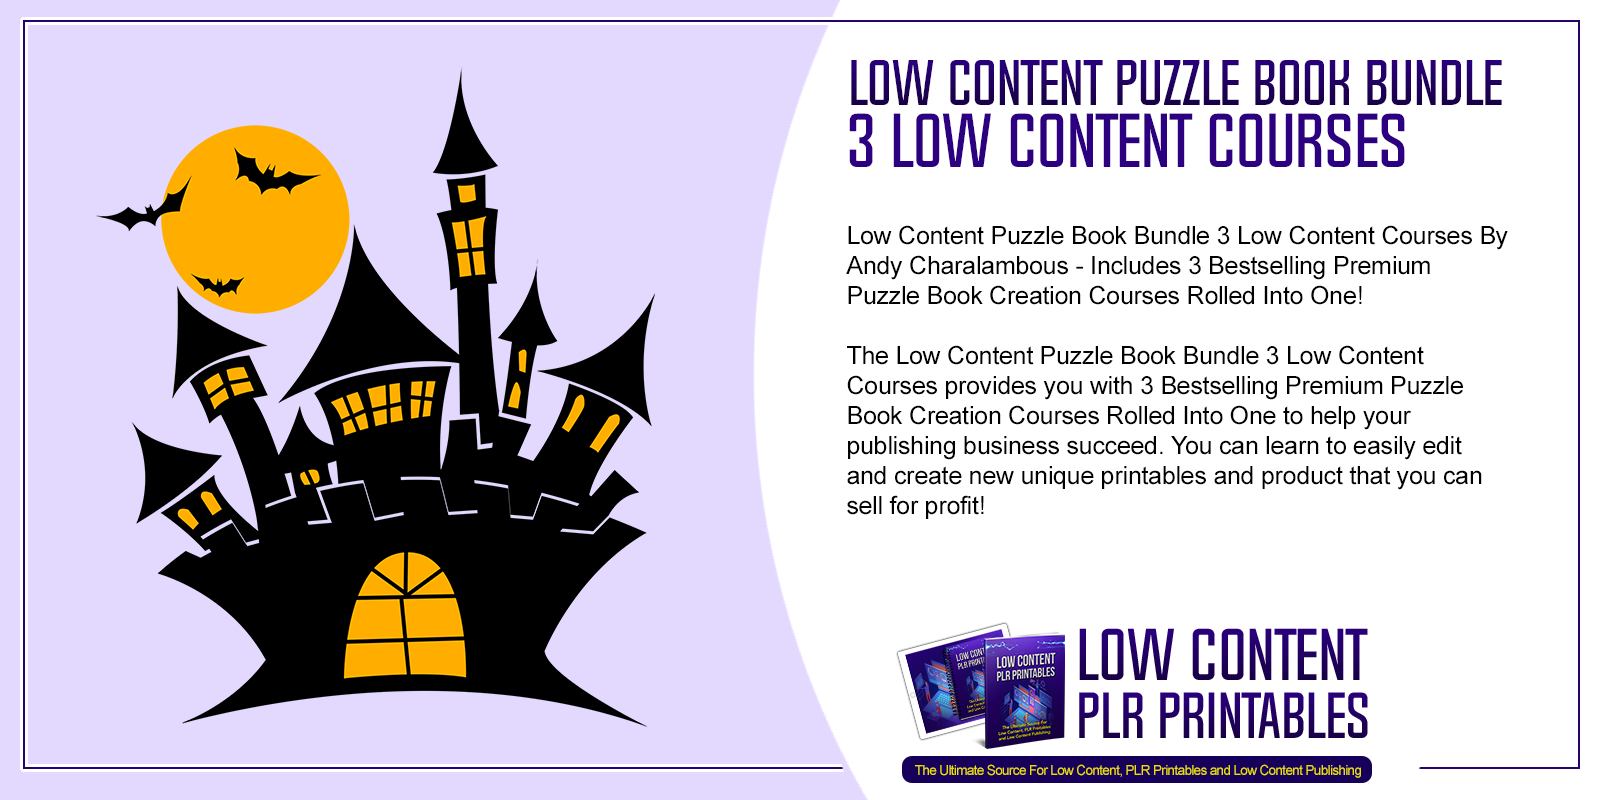 Low Content Puzzle Book Bundle 3 Low Content Courses